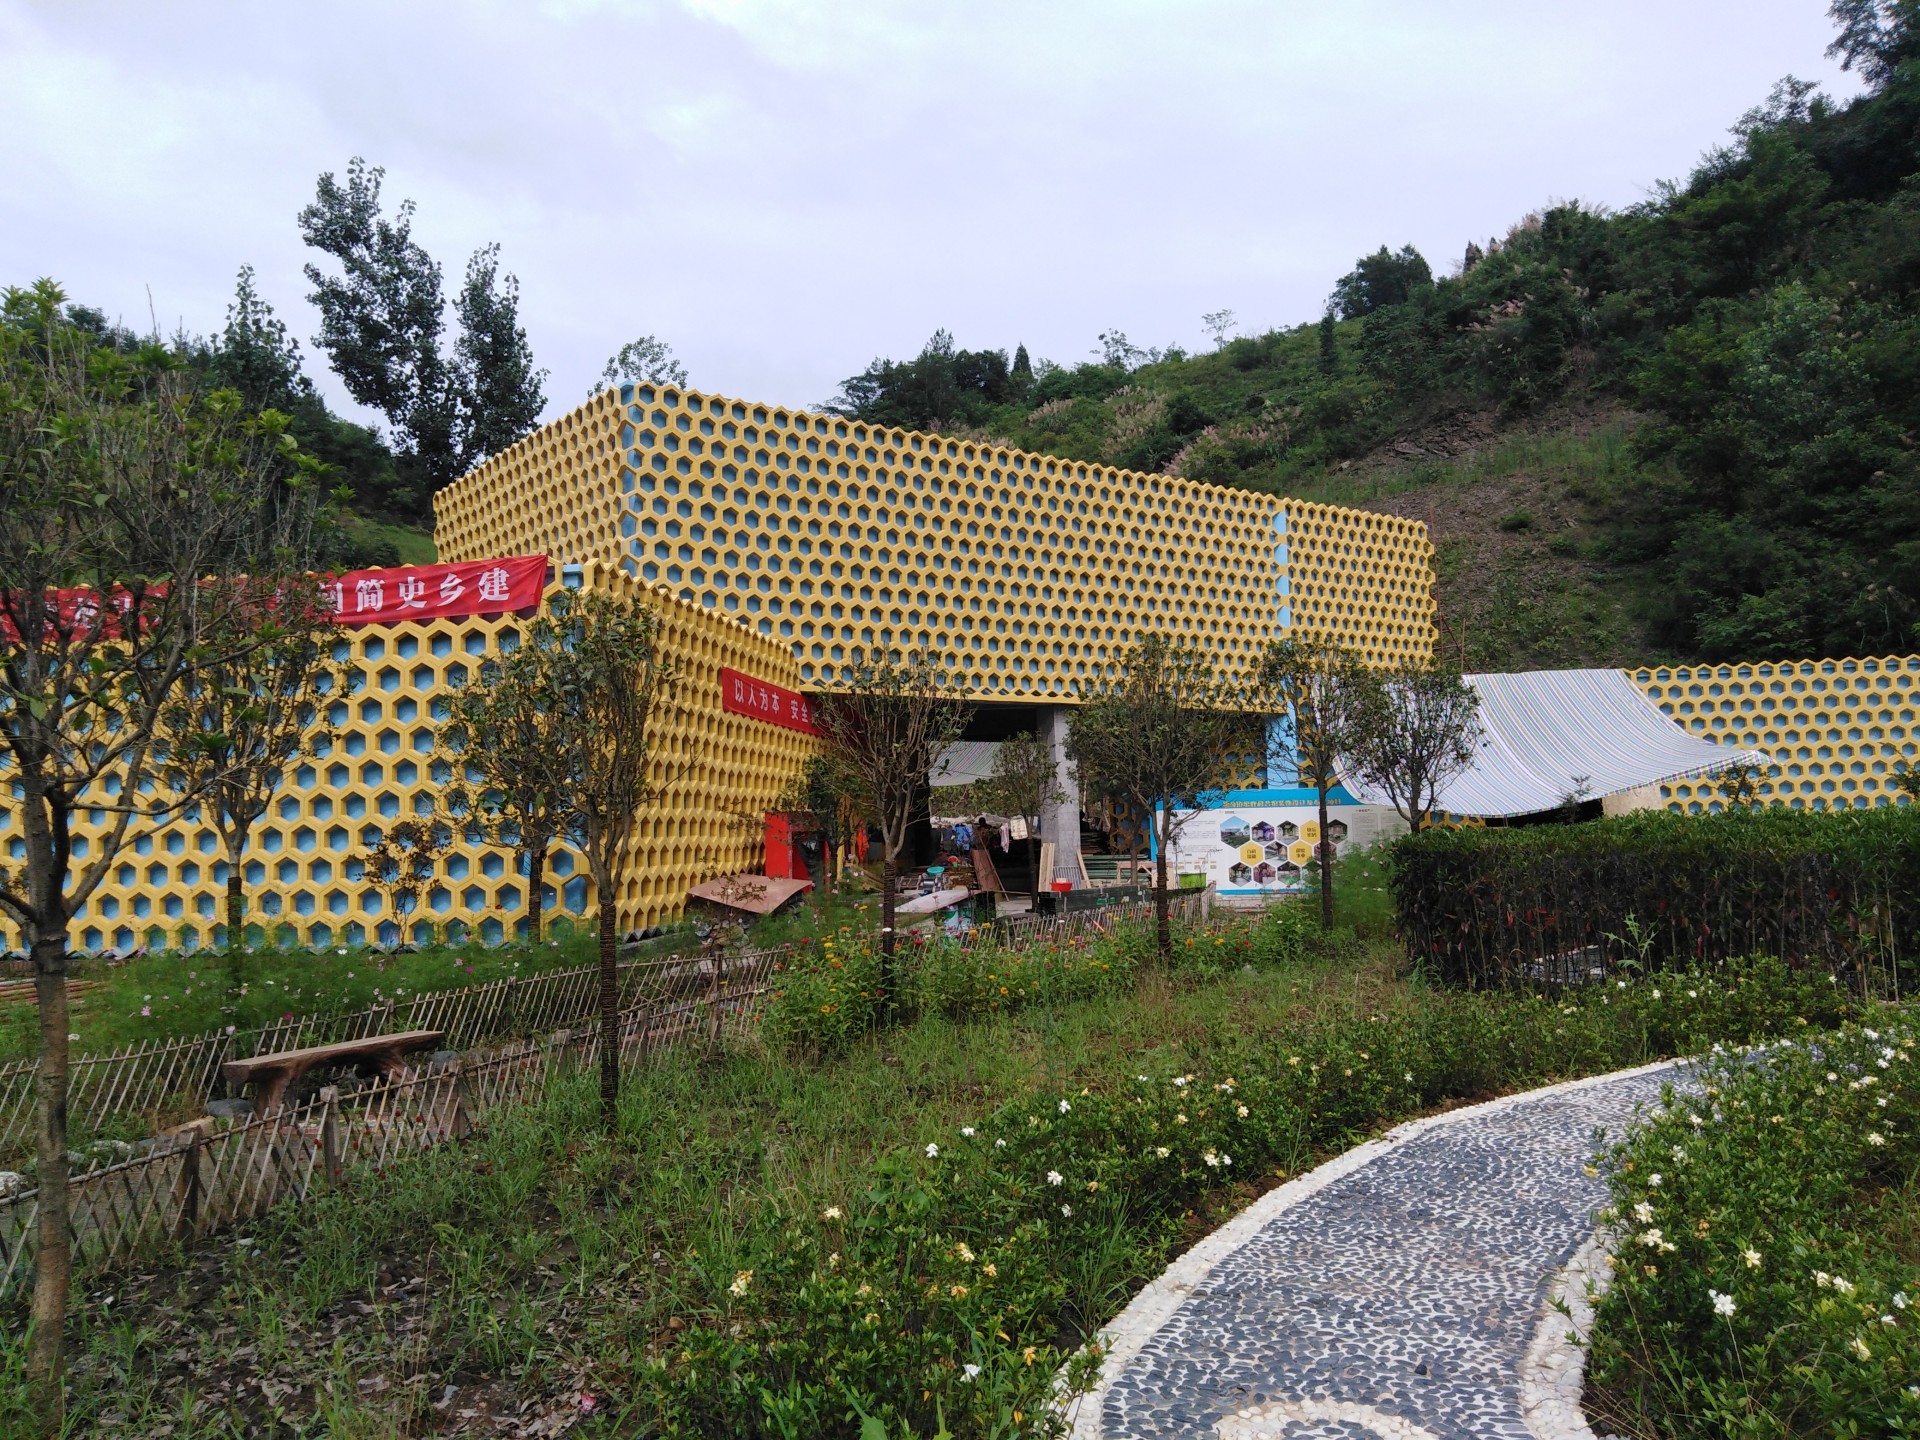 【高清图】中国福标蜜蜂博物馆-36P-中关村在线摄影论坛